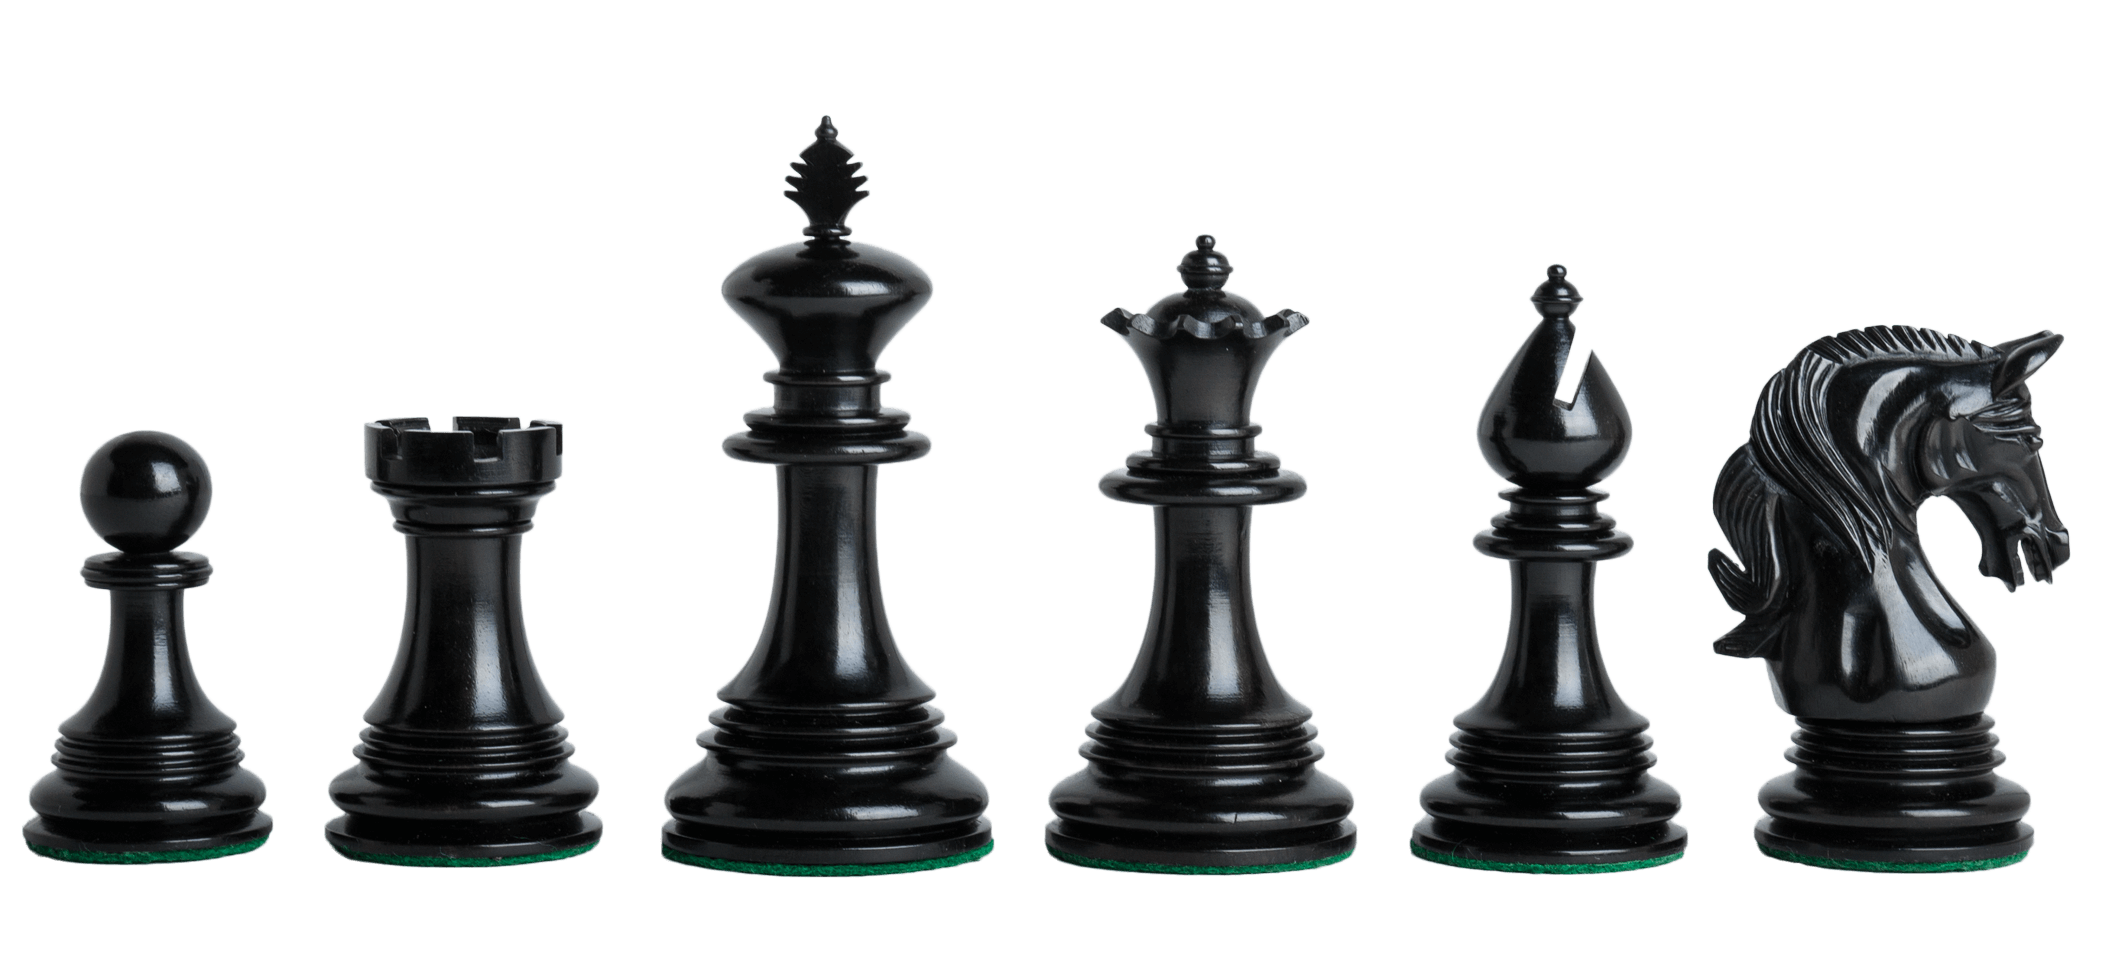 Картинка прозрачная шахматы. Шахматы ферзь Ладья Король. Шахматы фигуры на прозрачном фоне. Шахматные фигурки на прозрачном фоне. Шахматные фигуры на белом фоне.